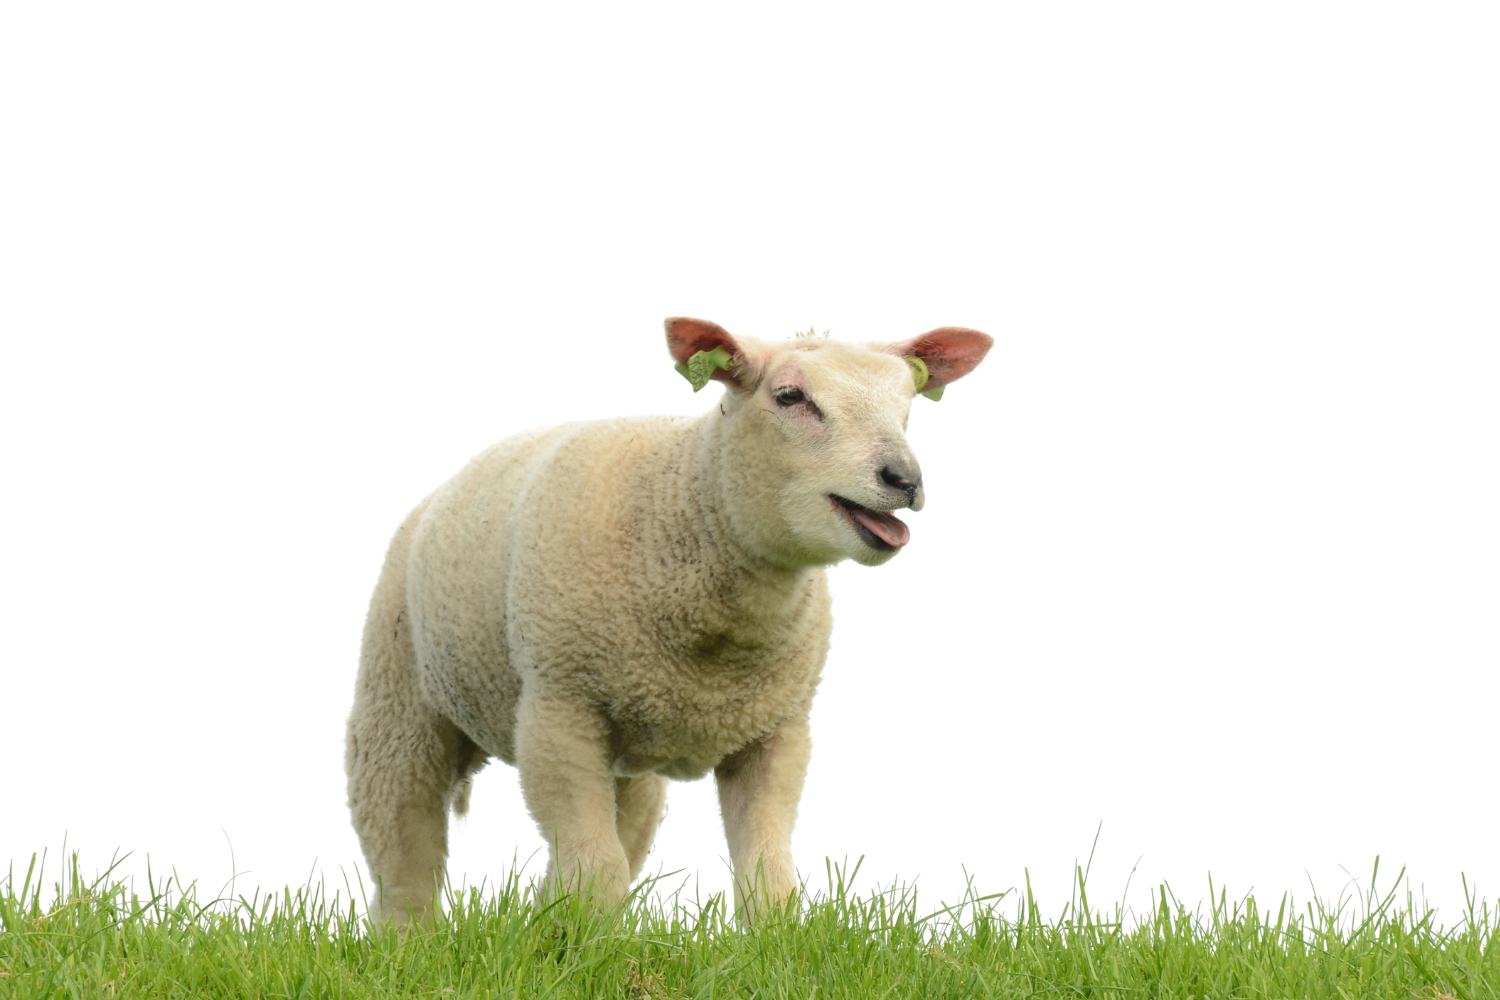 69-c94769e7 Sheep / shepherd